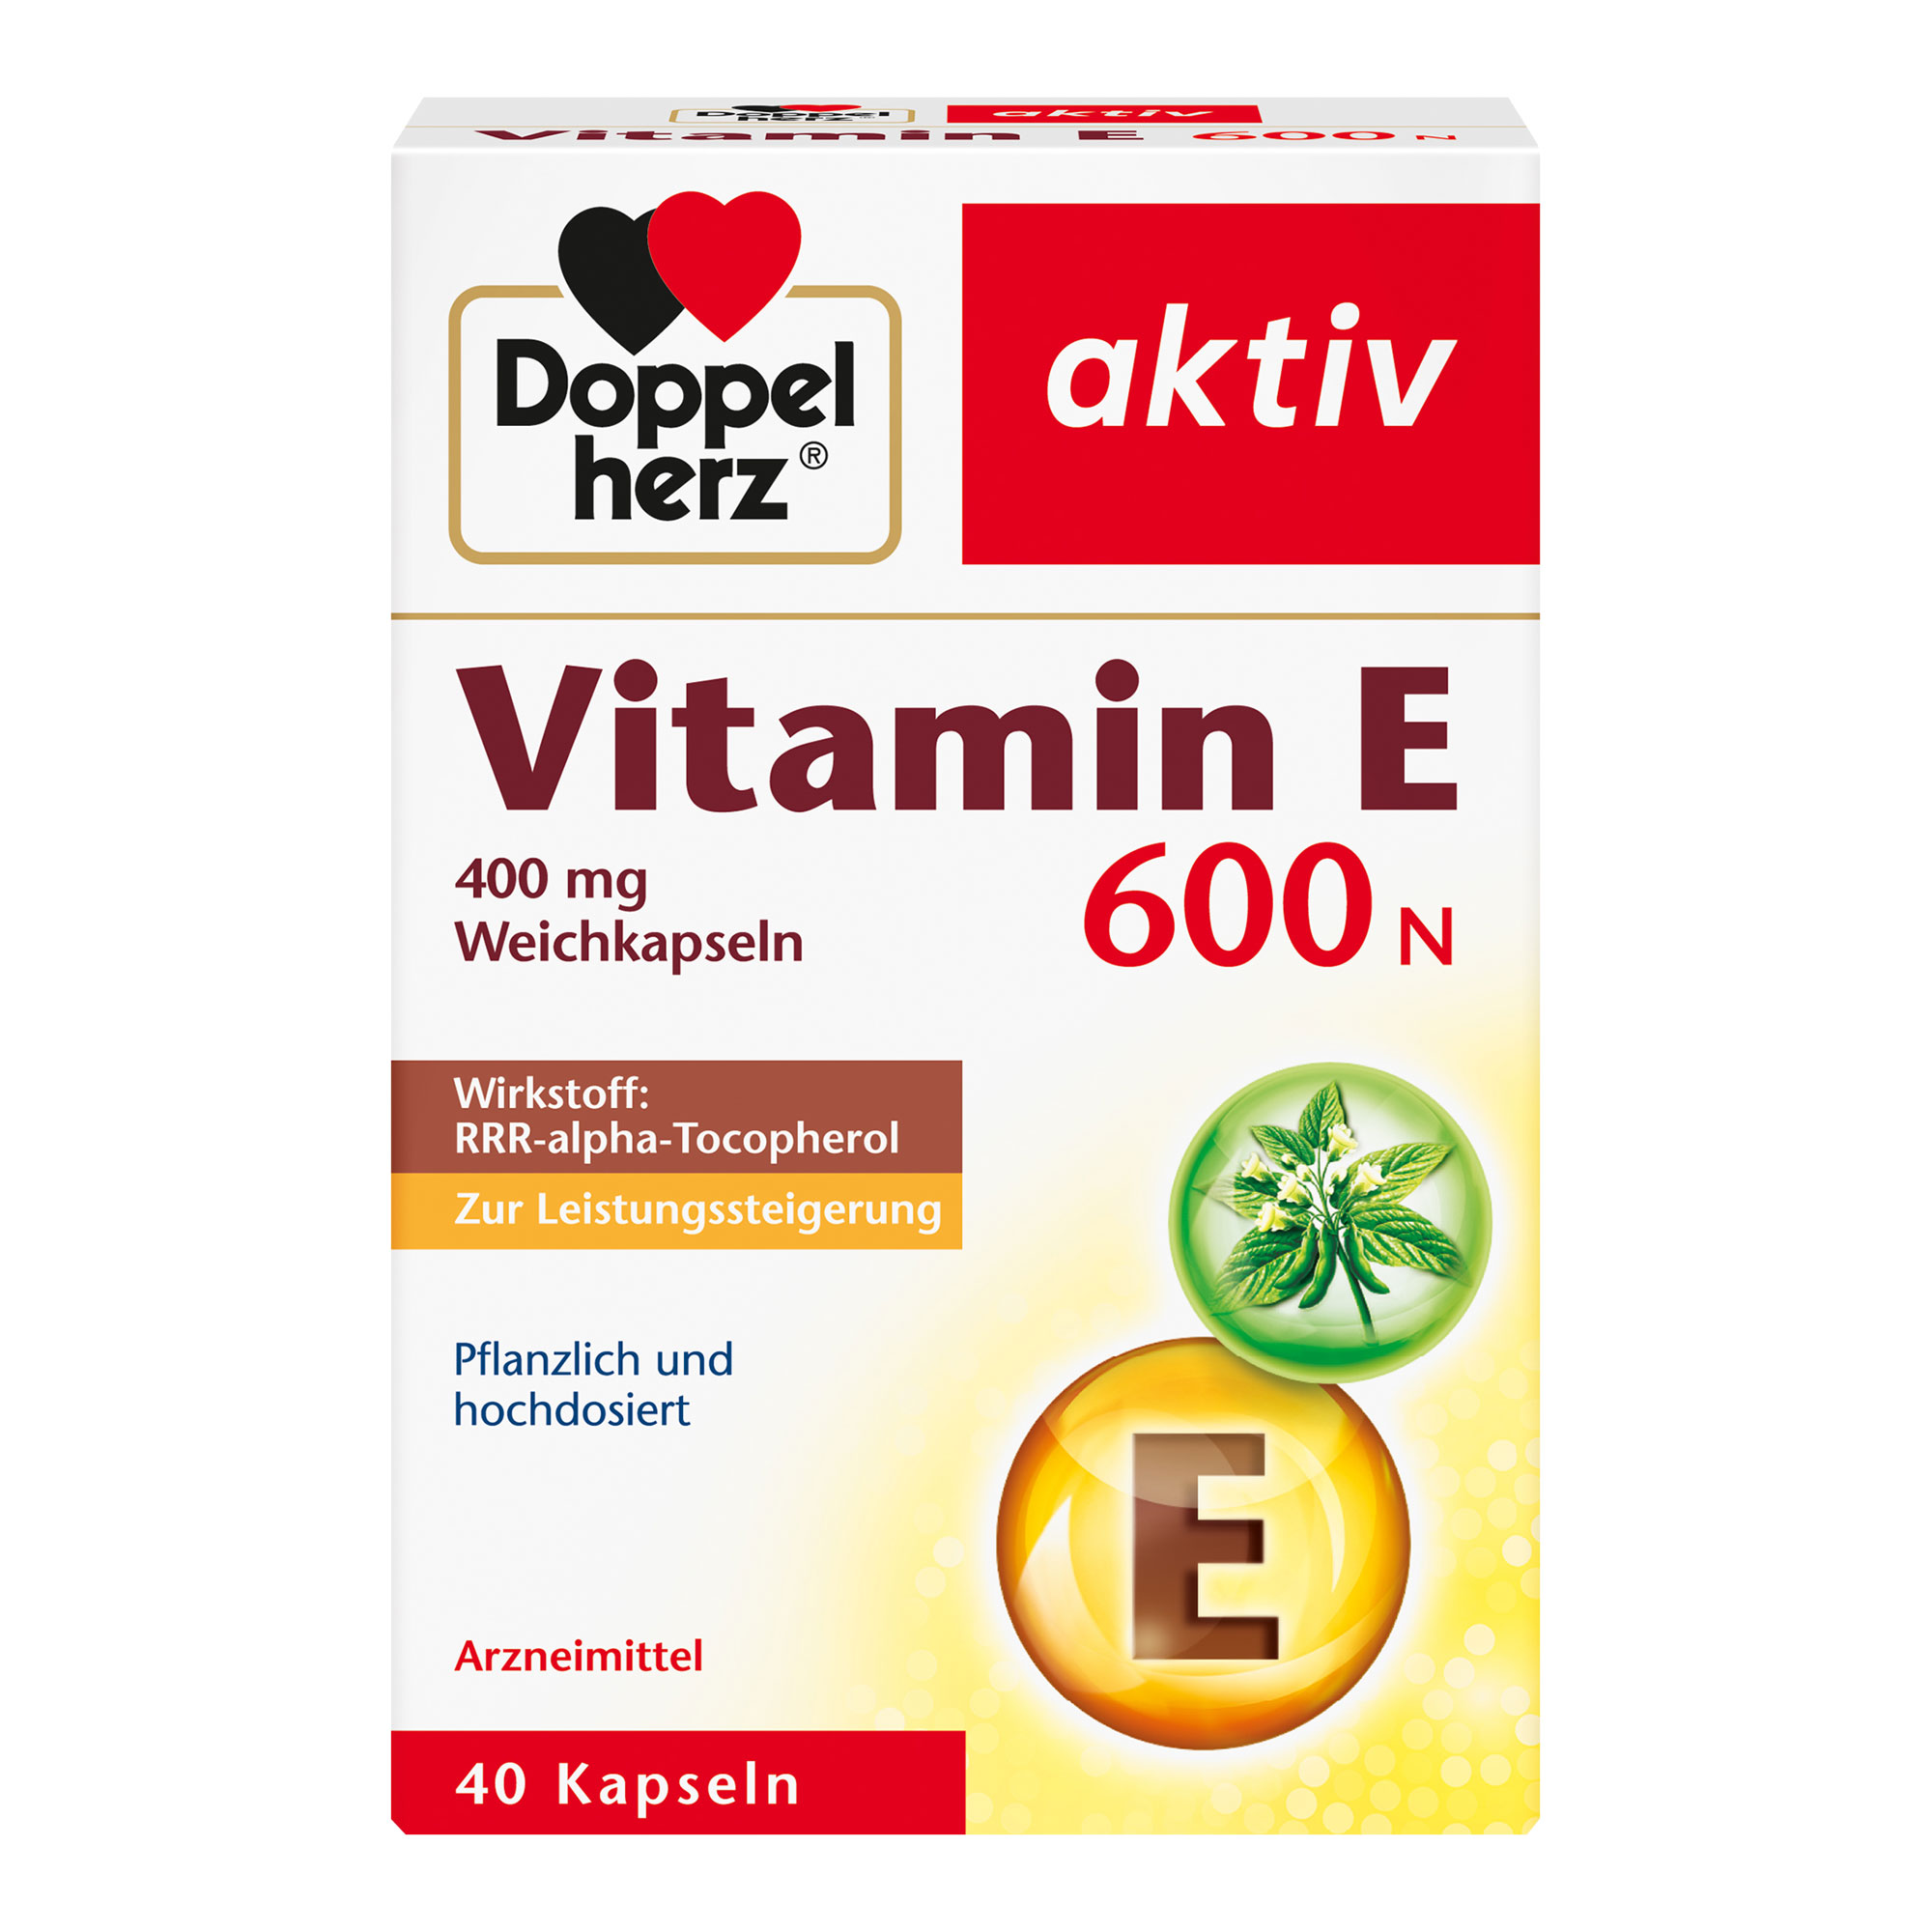 Vitaminpräparat zur Leistungssteigerung. Mit Vitamin E.